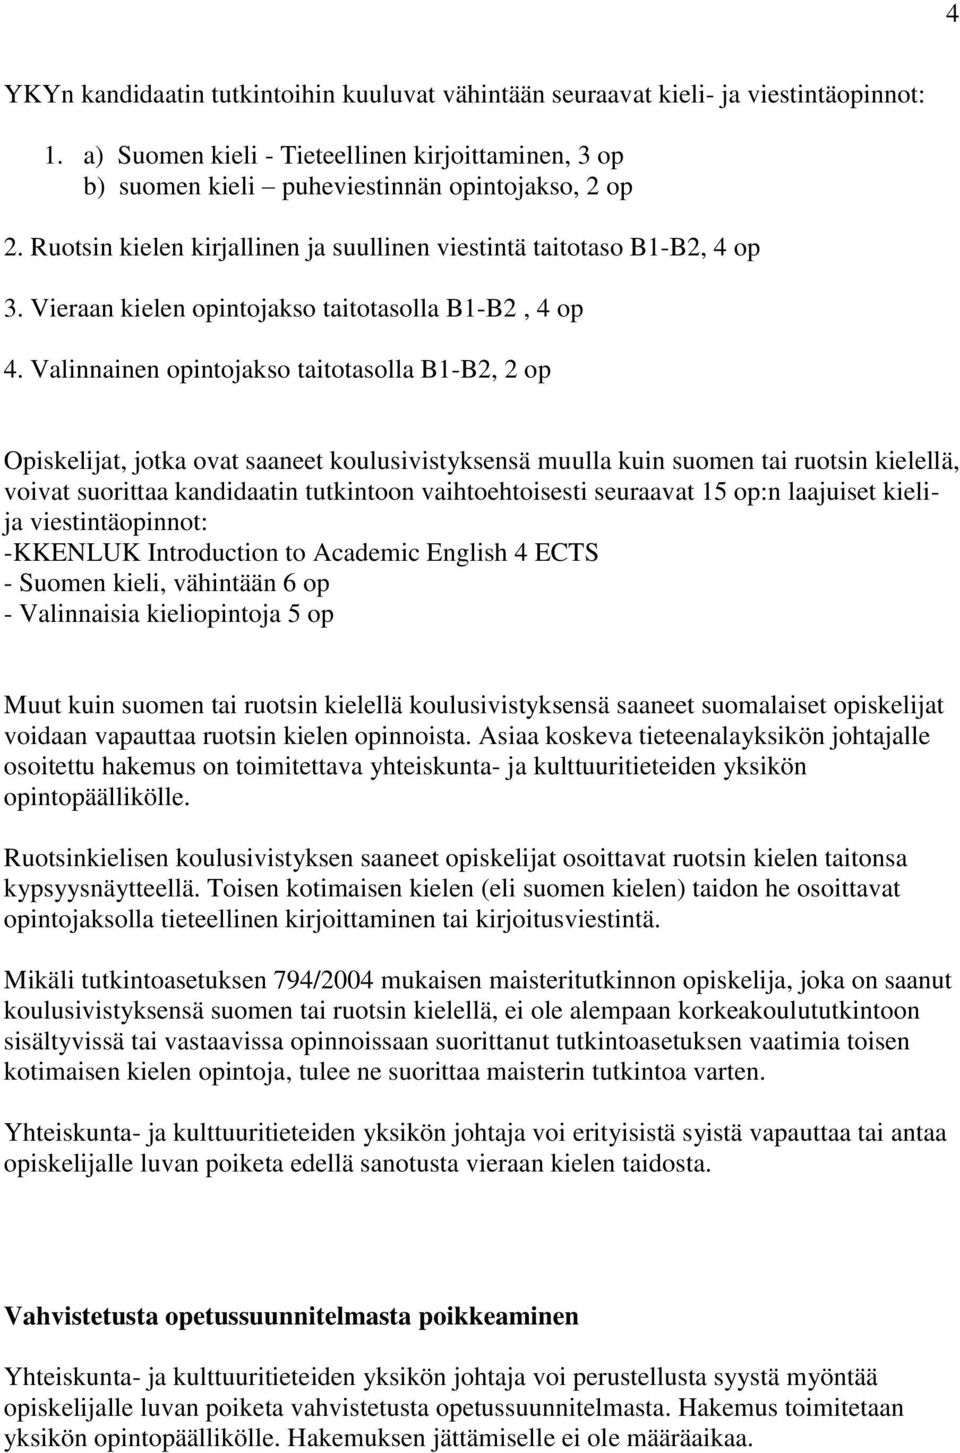 Valinnainen opintojakso taitotasolla B1-B2, 2 op Opiskelijat, jotka ovat saaneet koulusivistyksensä muulla kuin suomen tai ruotsin kielellä, voivat suorittaa kandidaatin tutkintoon vaihtoehtoisesti